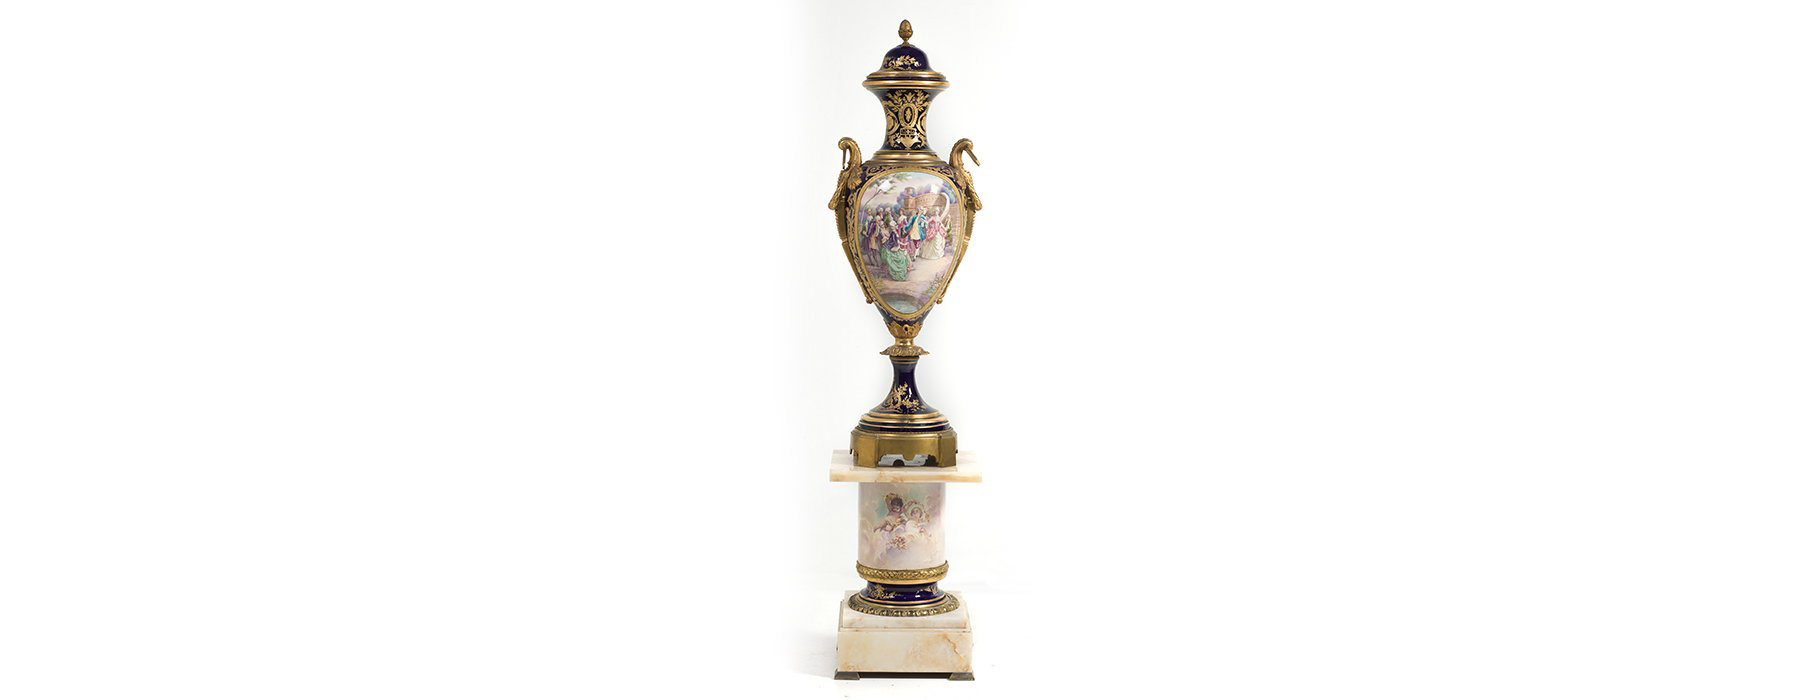 9.500 euros por un jarrón estilo Sèvres en Ansorena